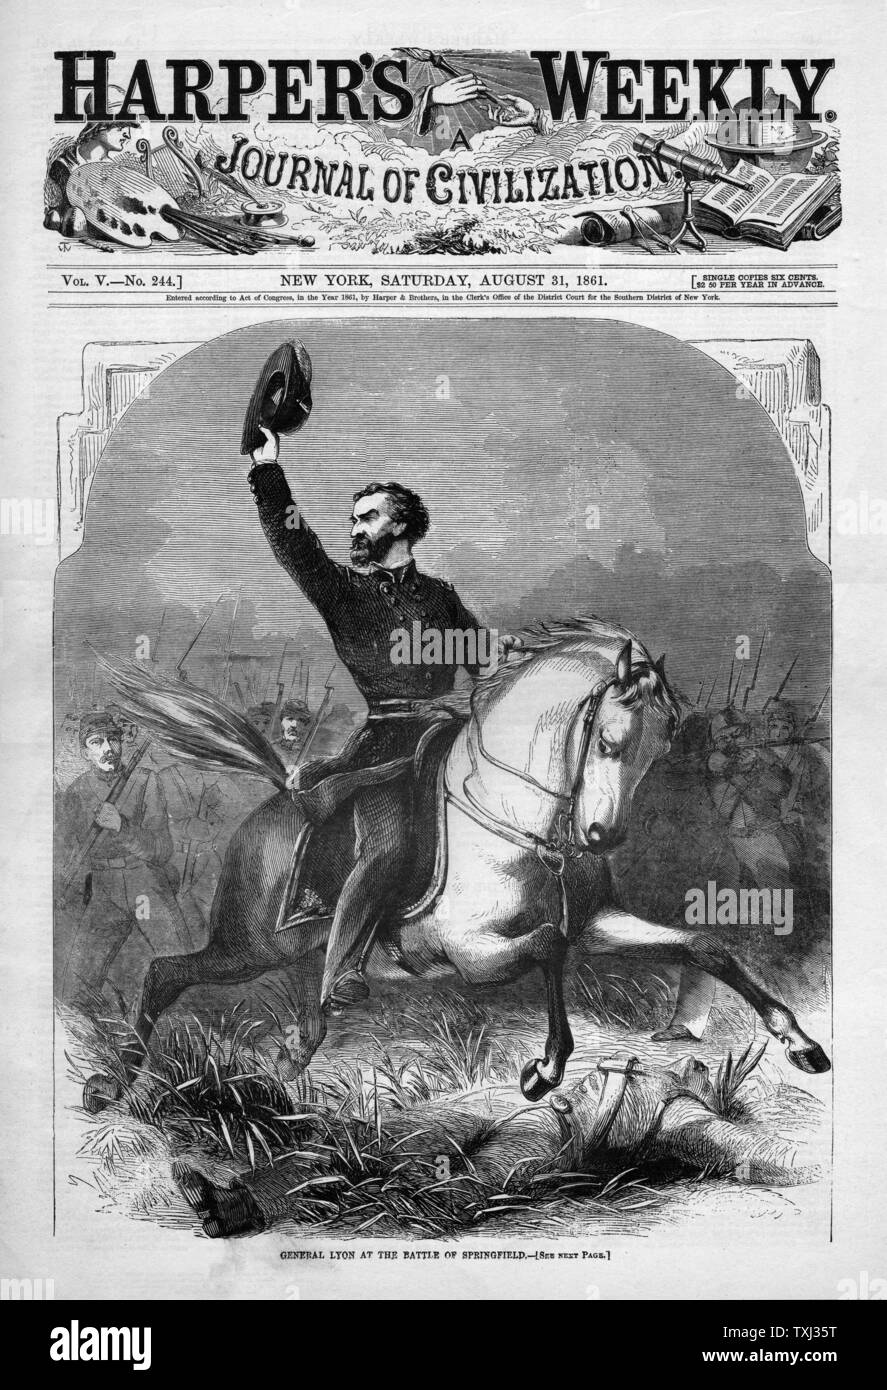 1861 Harper's Weekly page avant guerre civile américaine général Lyon Bataille de Springfield Banque D'Images